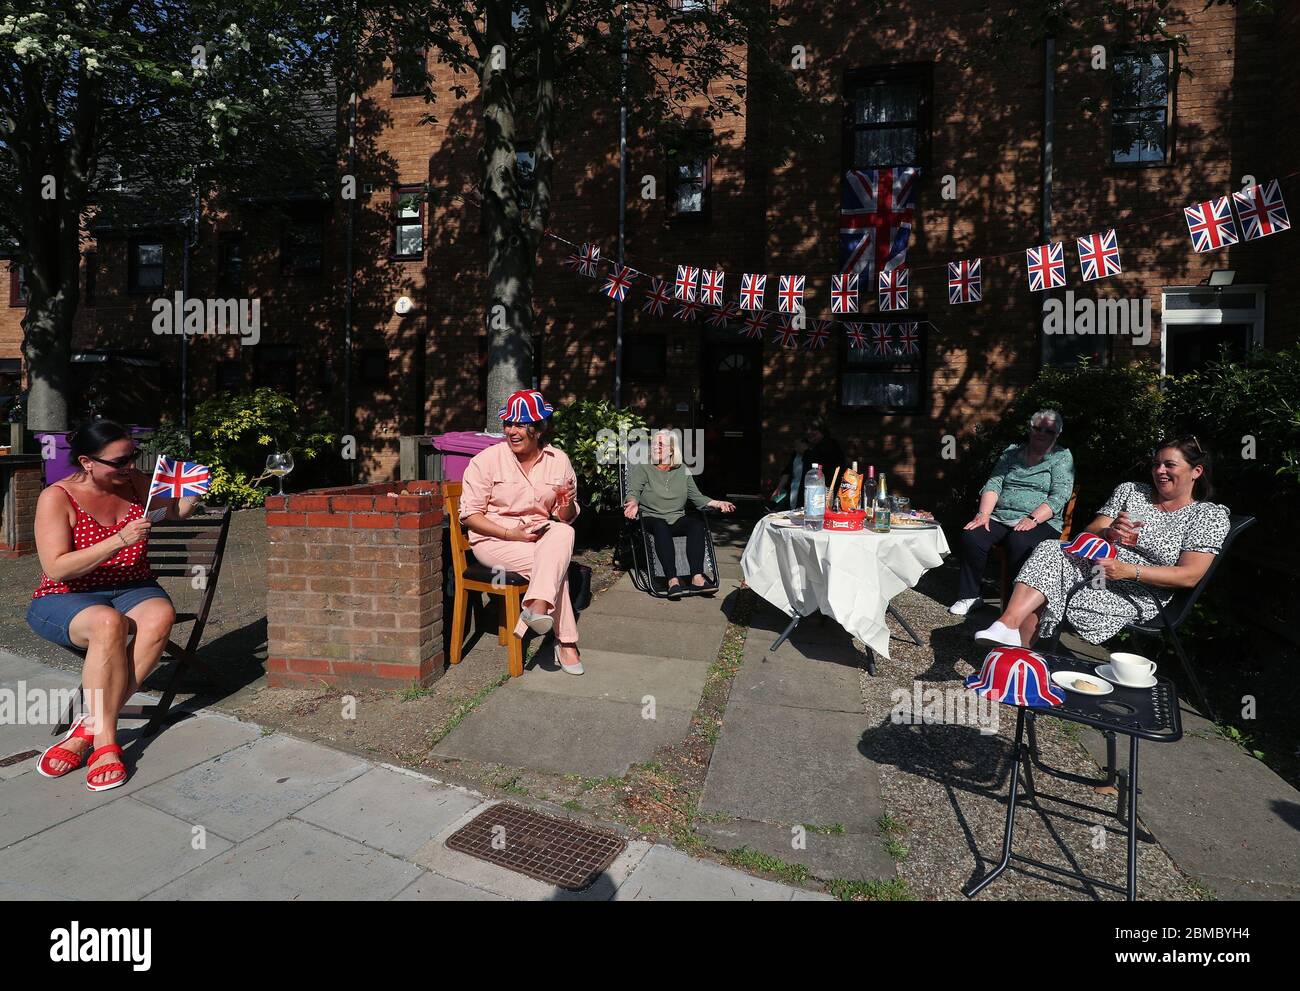 I residenti di Saunders Ness Road nell'Isola dei cani, Londra est, lanciano una festa di strada con le distanze sociali per celebrare il 75° anniversario del VE Day. Foto Stock